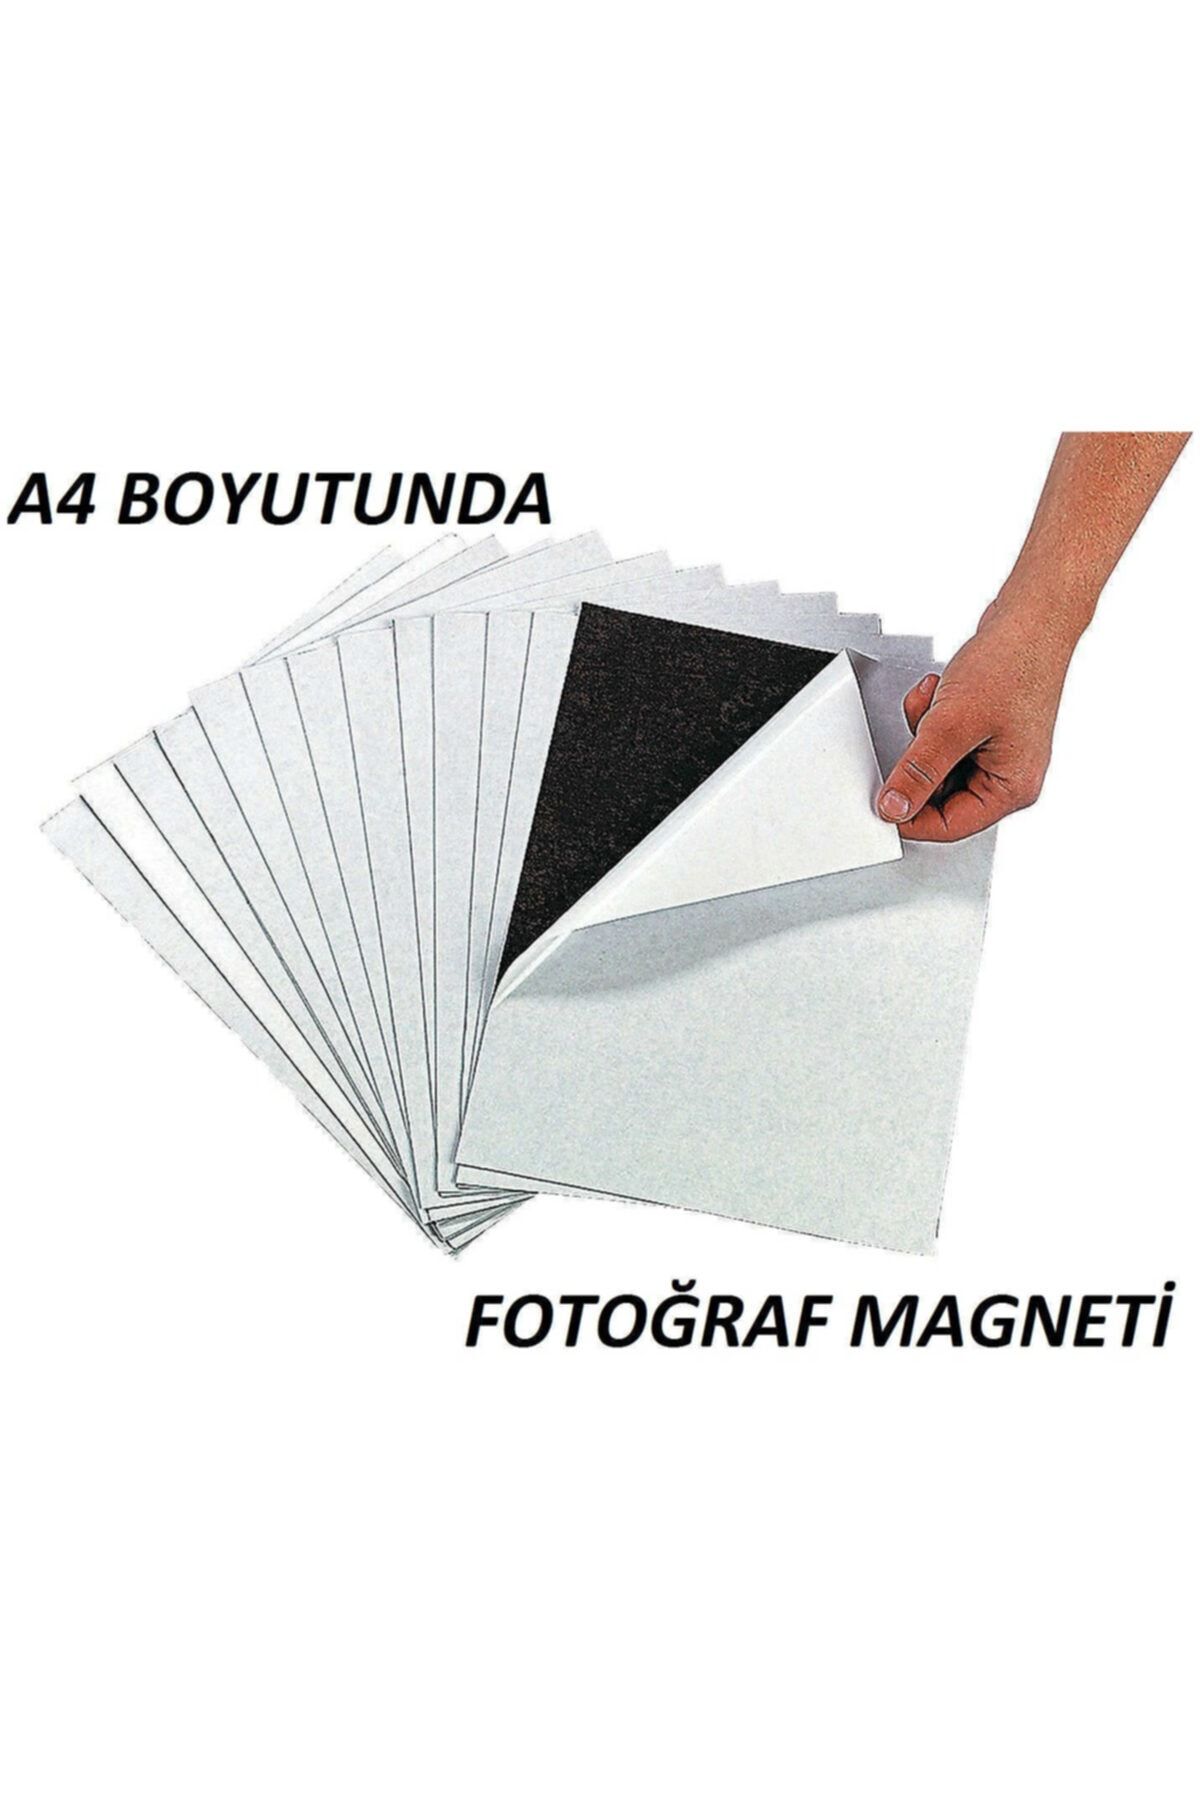 Dünya Magnet Yapışkanlı Fotoğraf Magneti, A4 Boyutunda Tabaka Plaka Magnet Mıknatıs